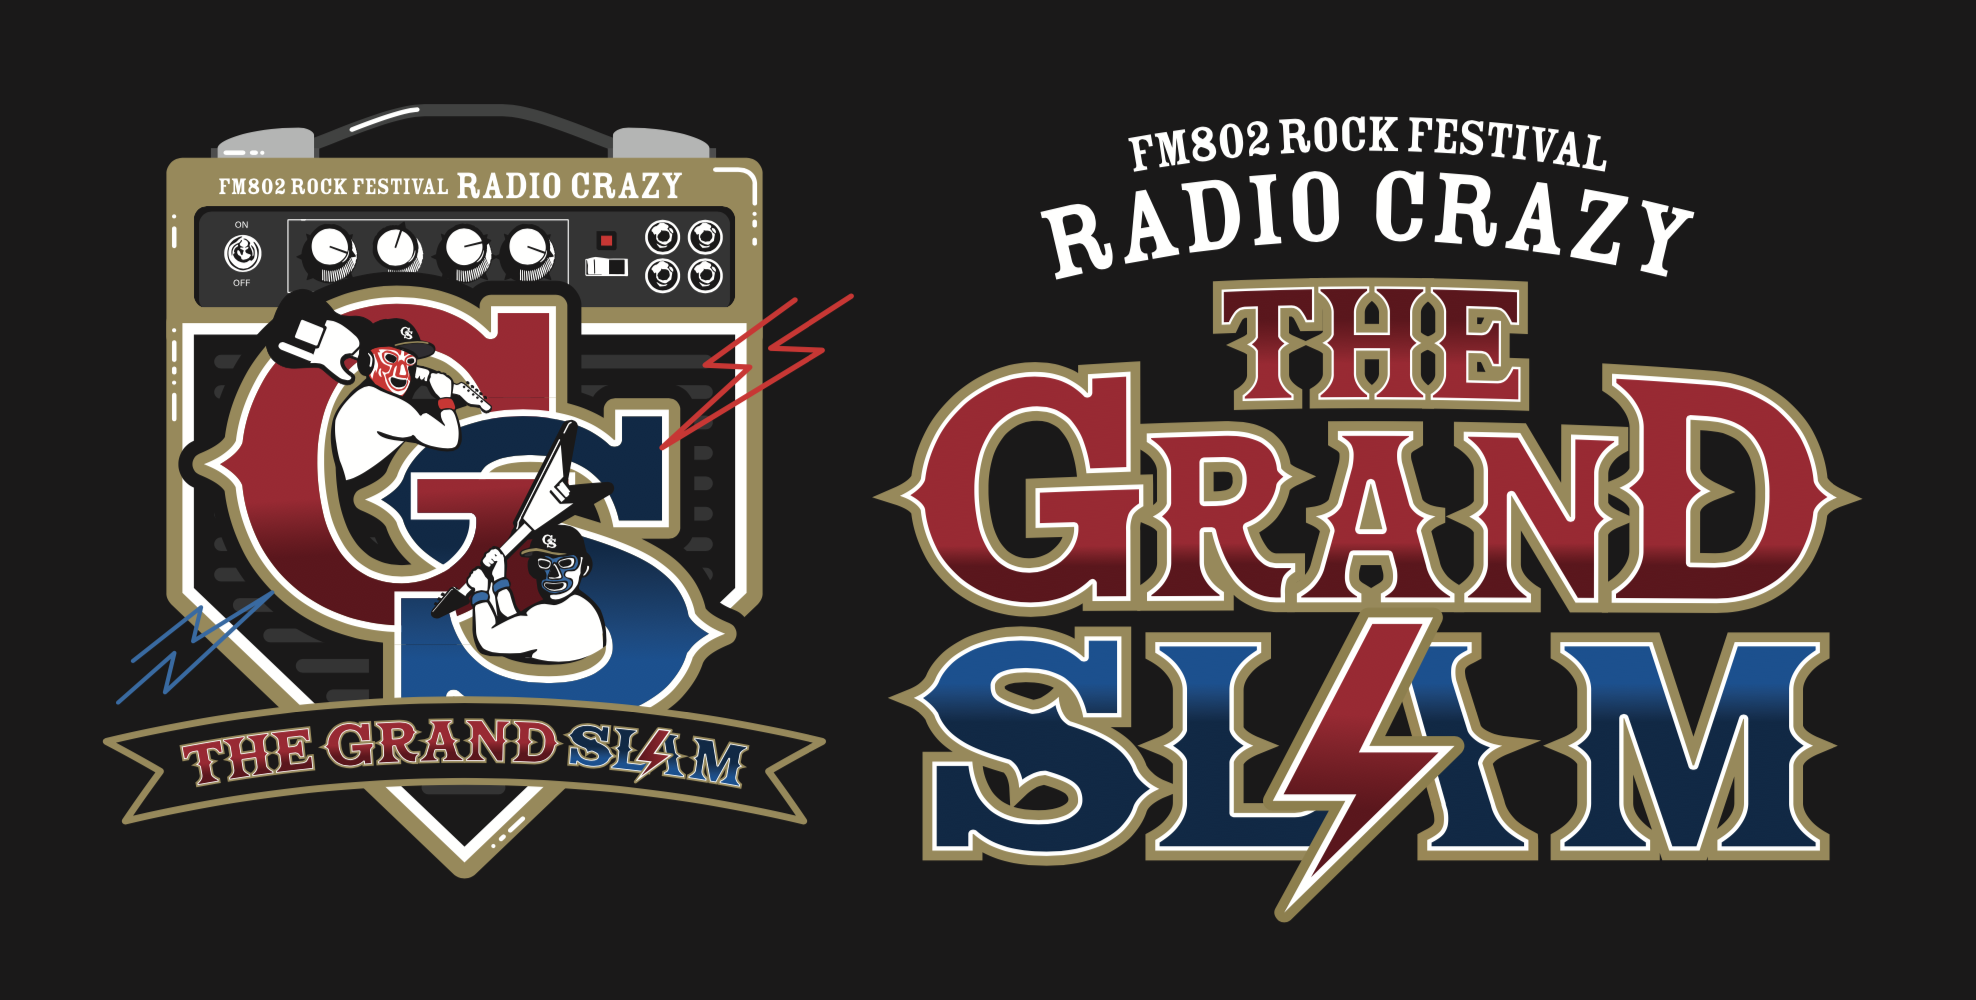 京セラドーム大阪 <span class="live-title">FM802 ROCK FESTIVAL RADIO CRAZY presents THE GRAND SLAM</span> 